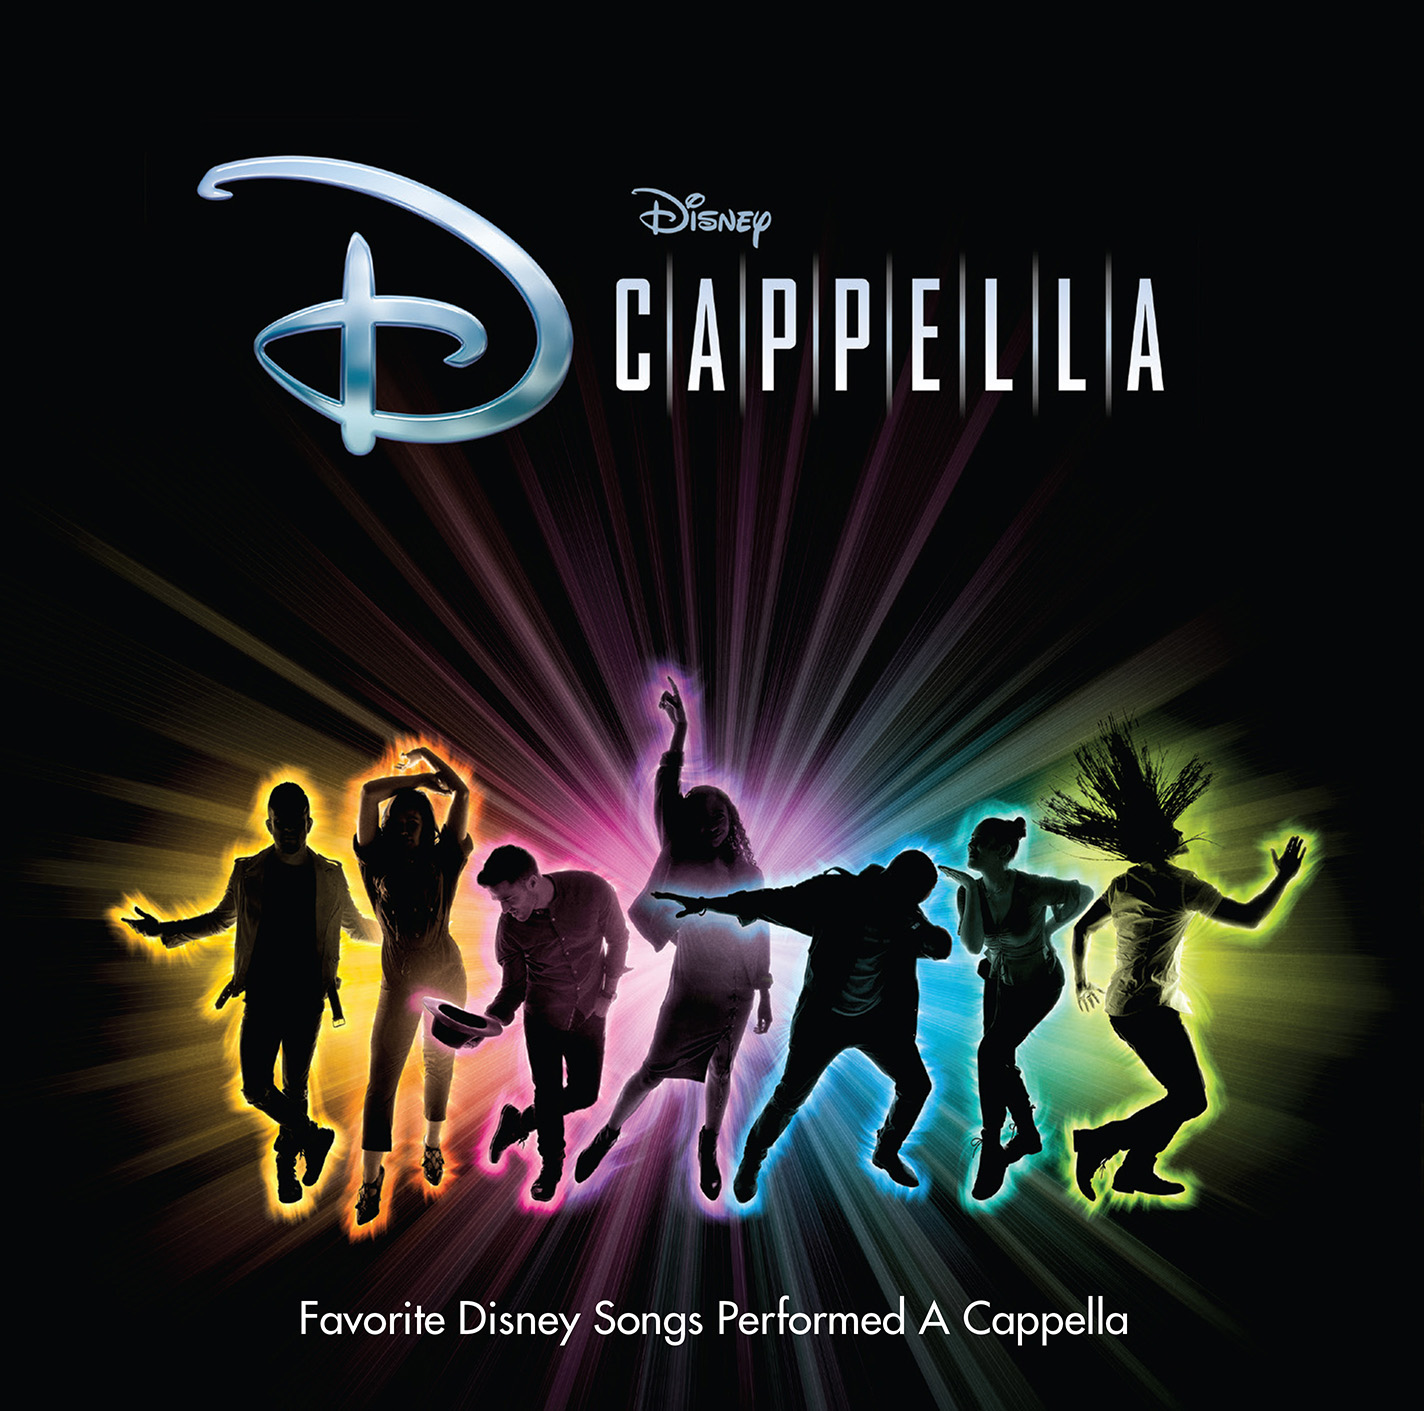 Disney DCappella Album and Tour Announcement